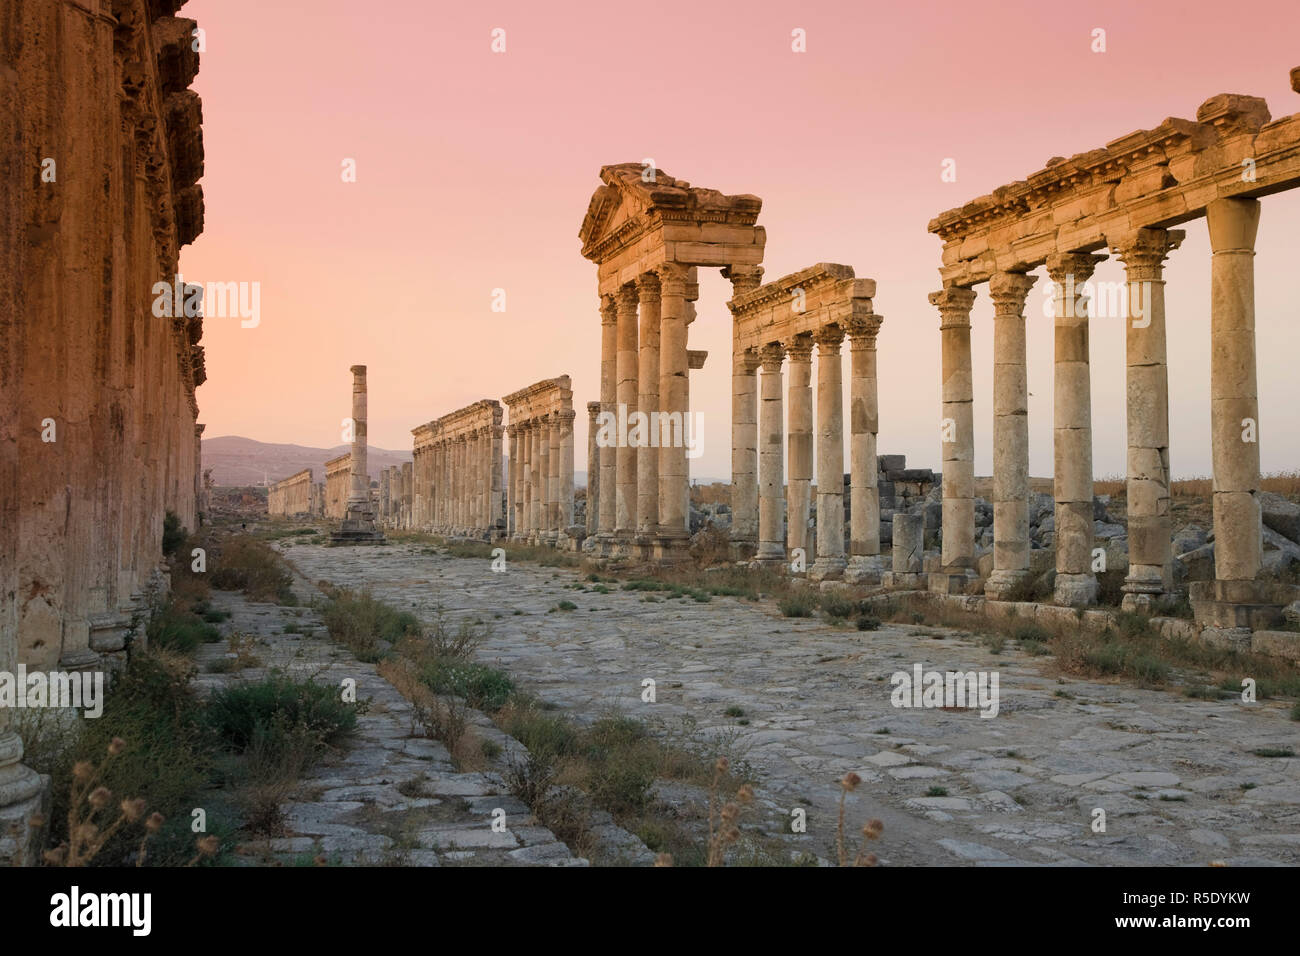 Siria, Apamea (Afamia) Sito Archeologico (fondata nel III secolo a.C.), 2km Cardo (Colonnato Romano Main Street) e ninfeo (fontana monumentale) Foto Stock